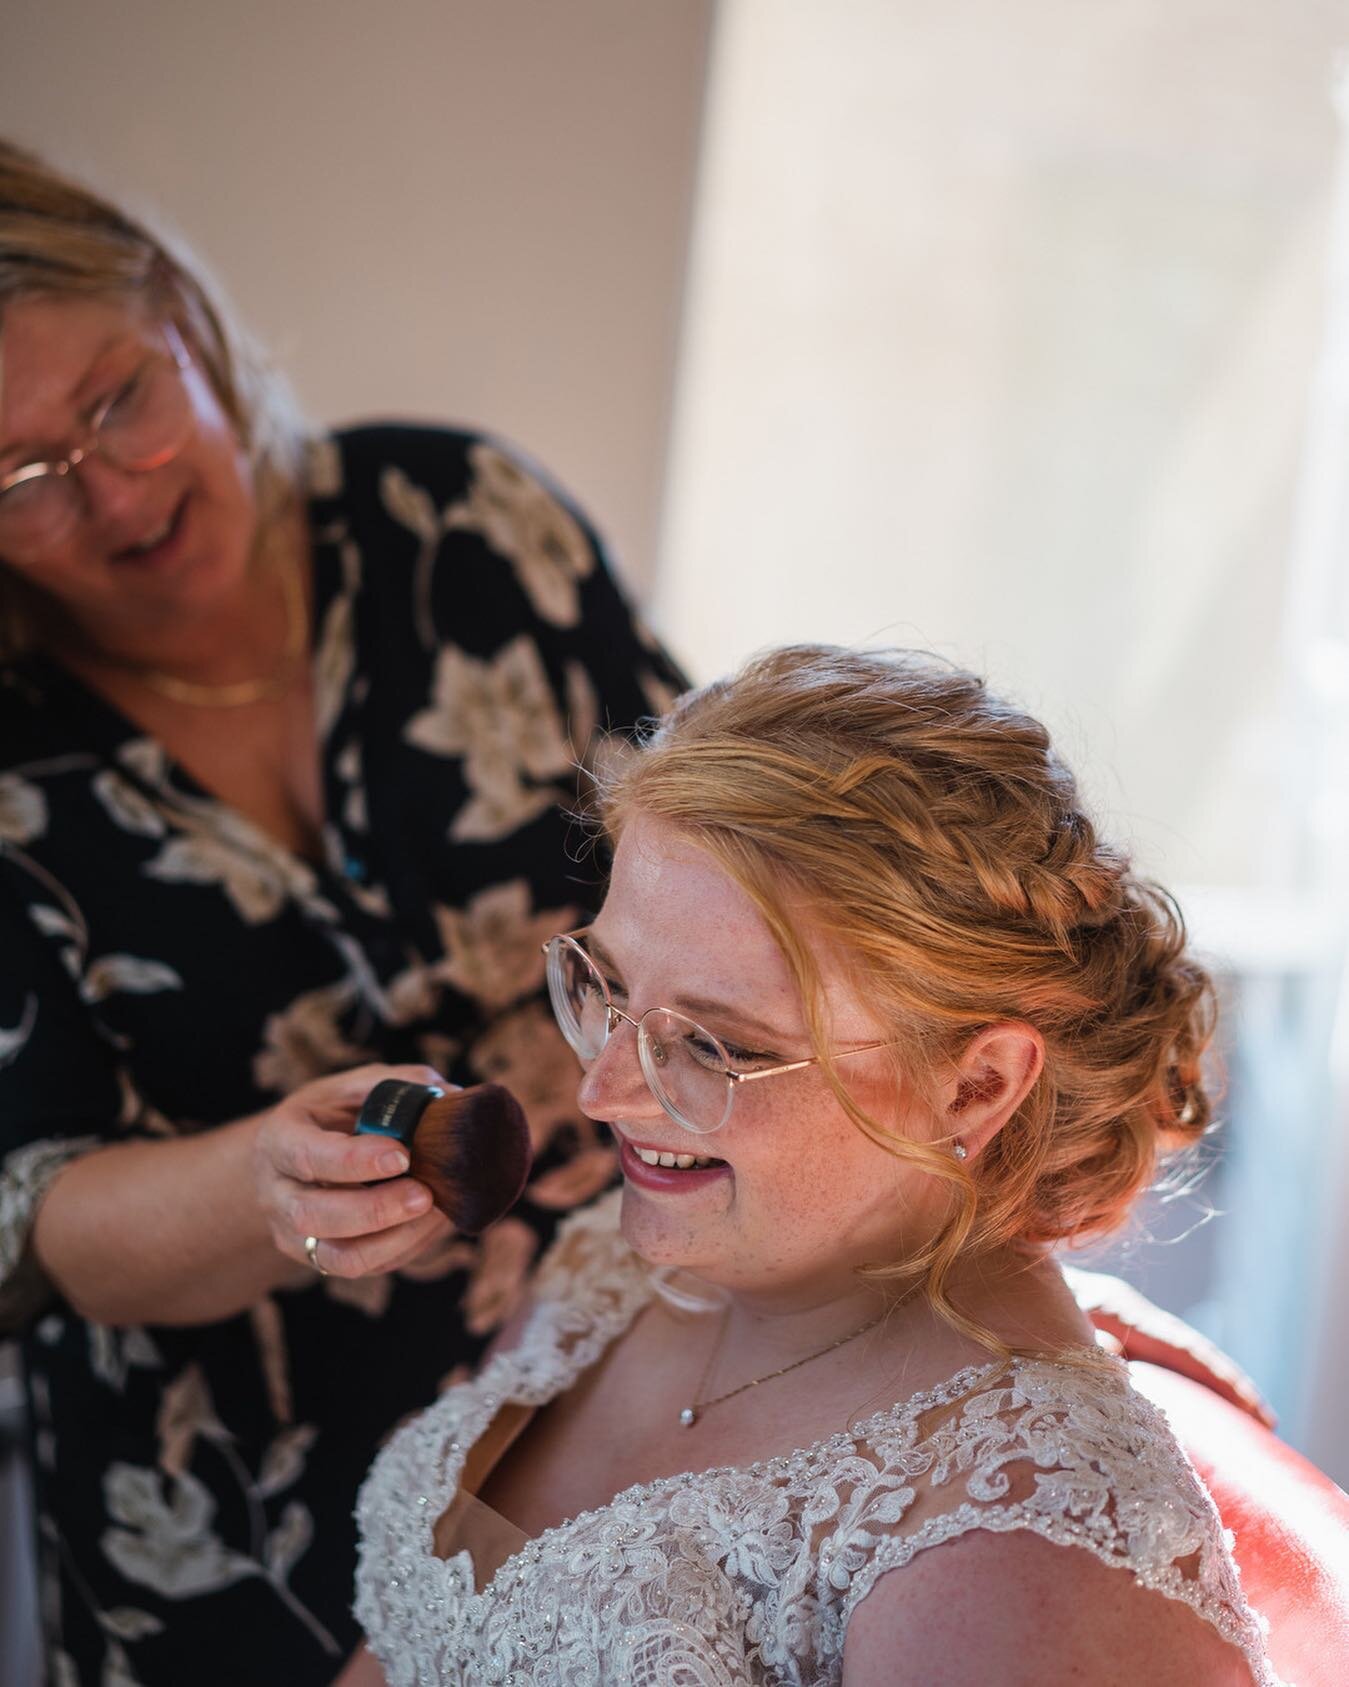 Capturing genuine smiles when preparing for the big day is my favorite moment of each wedding 😁
⠀⠀⠀⠀⠀⠀⠀⠀⠀
#wedding #bruiloft #fotograaf #trouwfotograaf #trouwen #utrecht #makeup